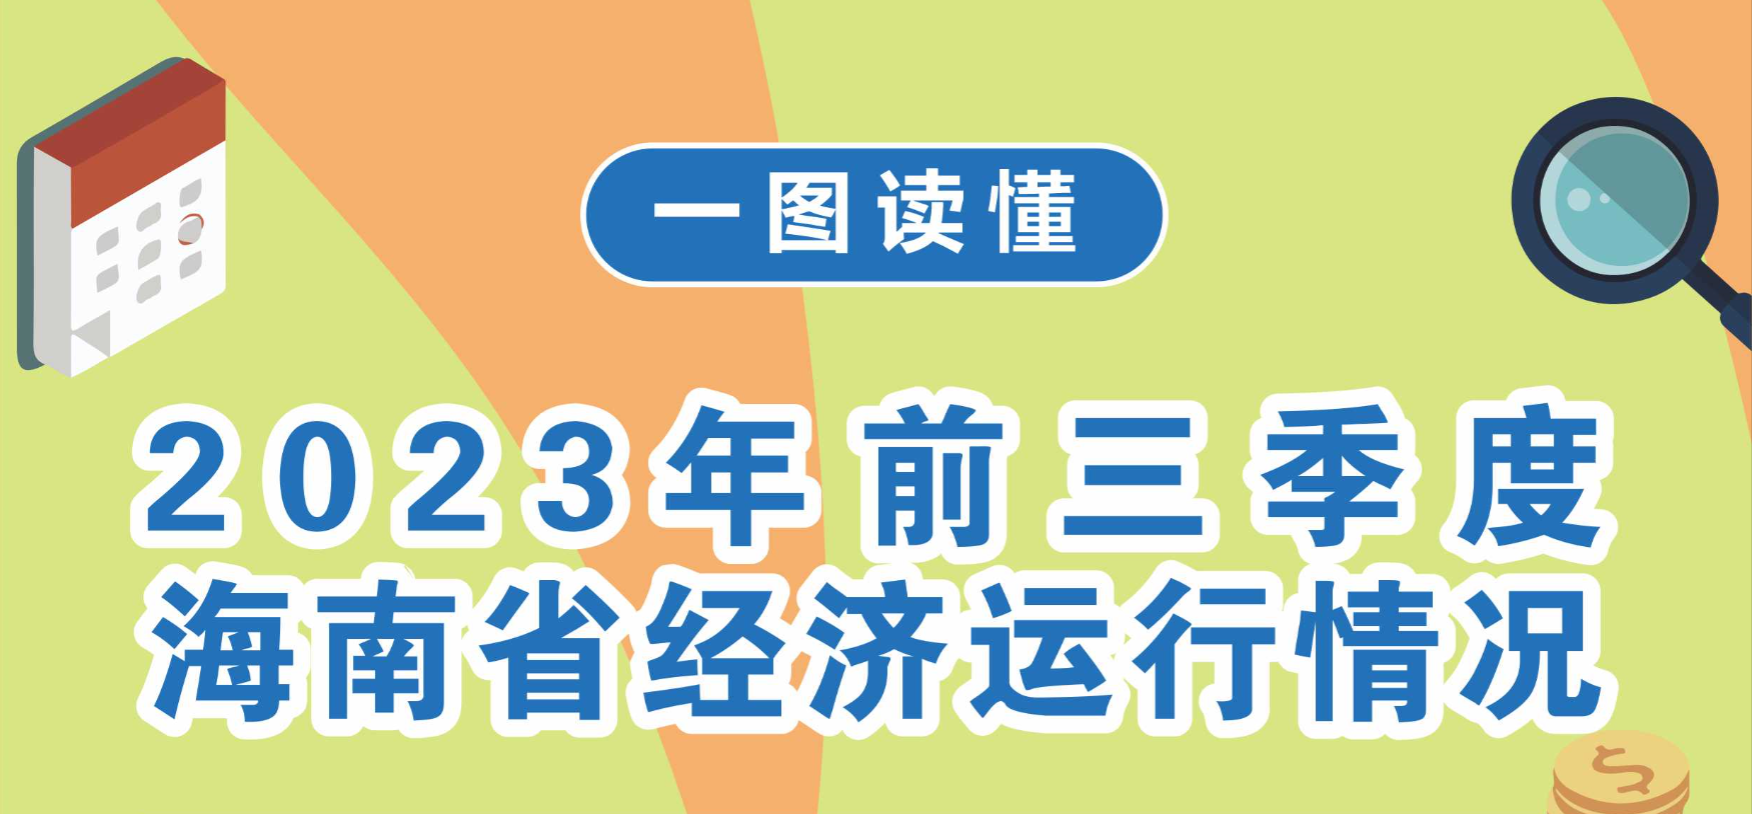 图解丨2023年前三季度海南省经济运行情况